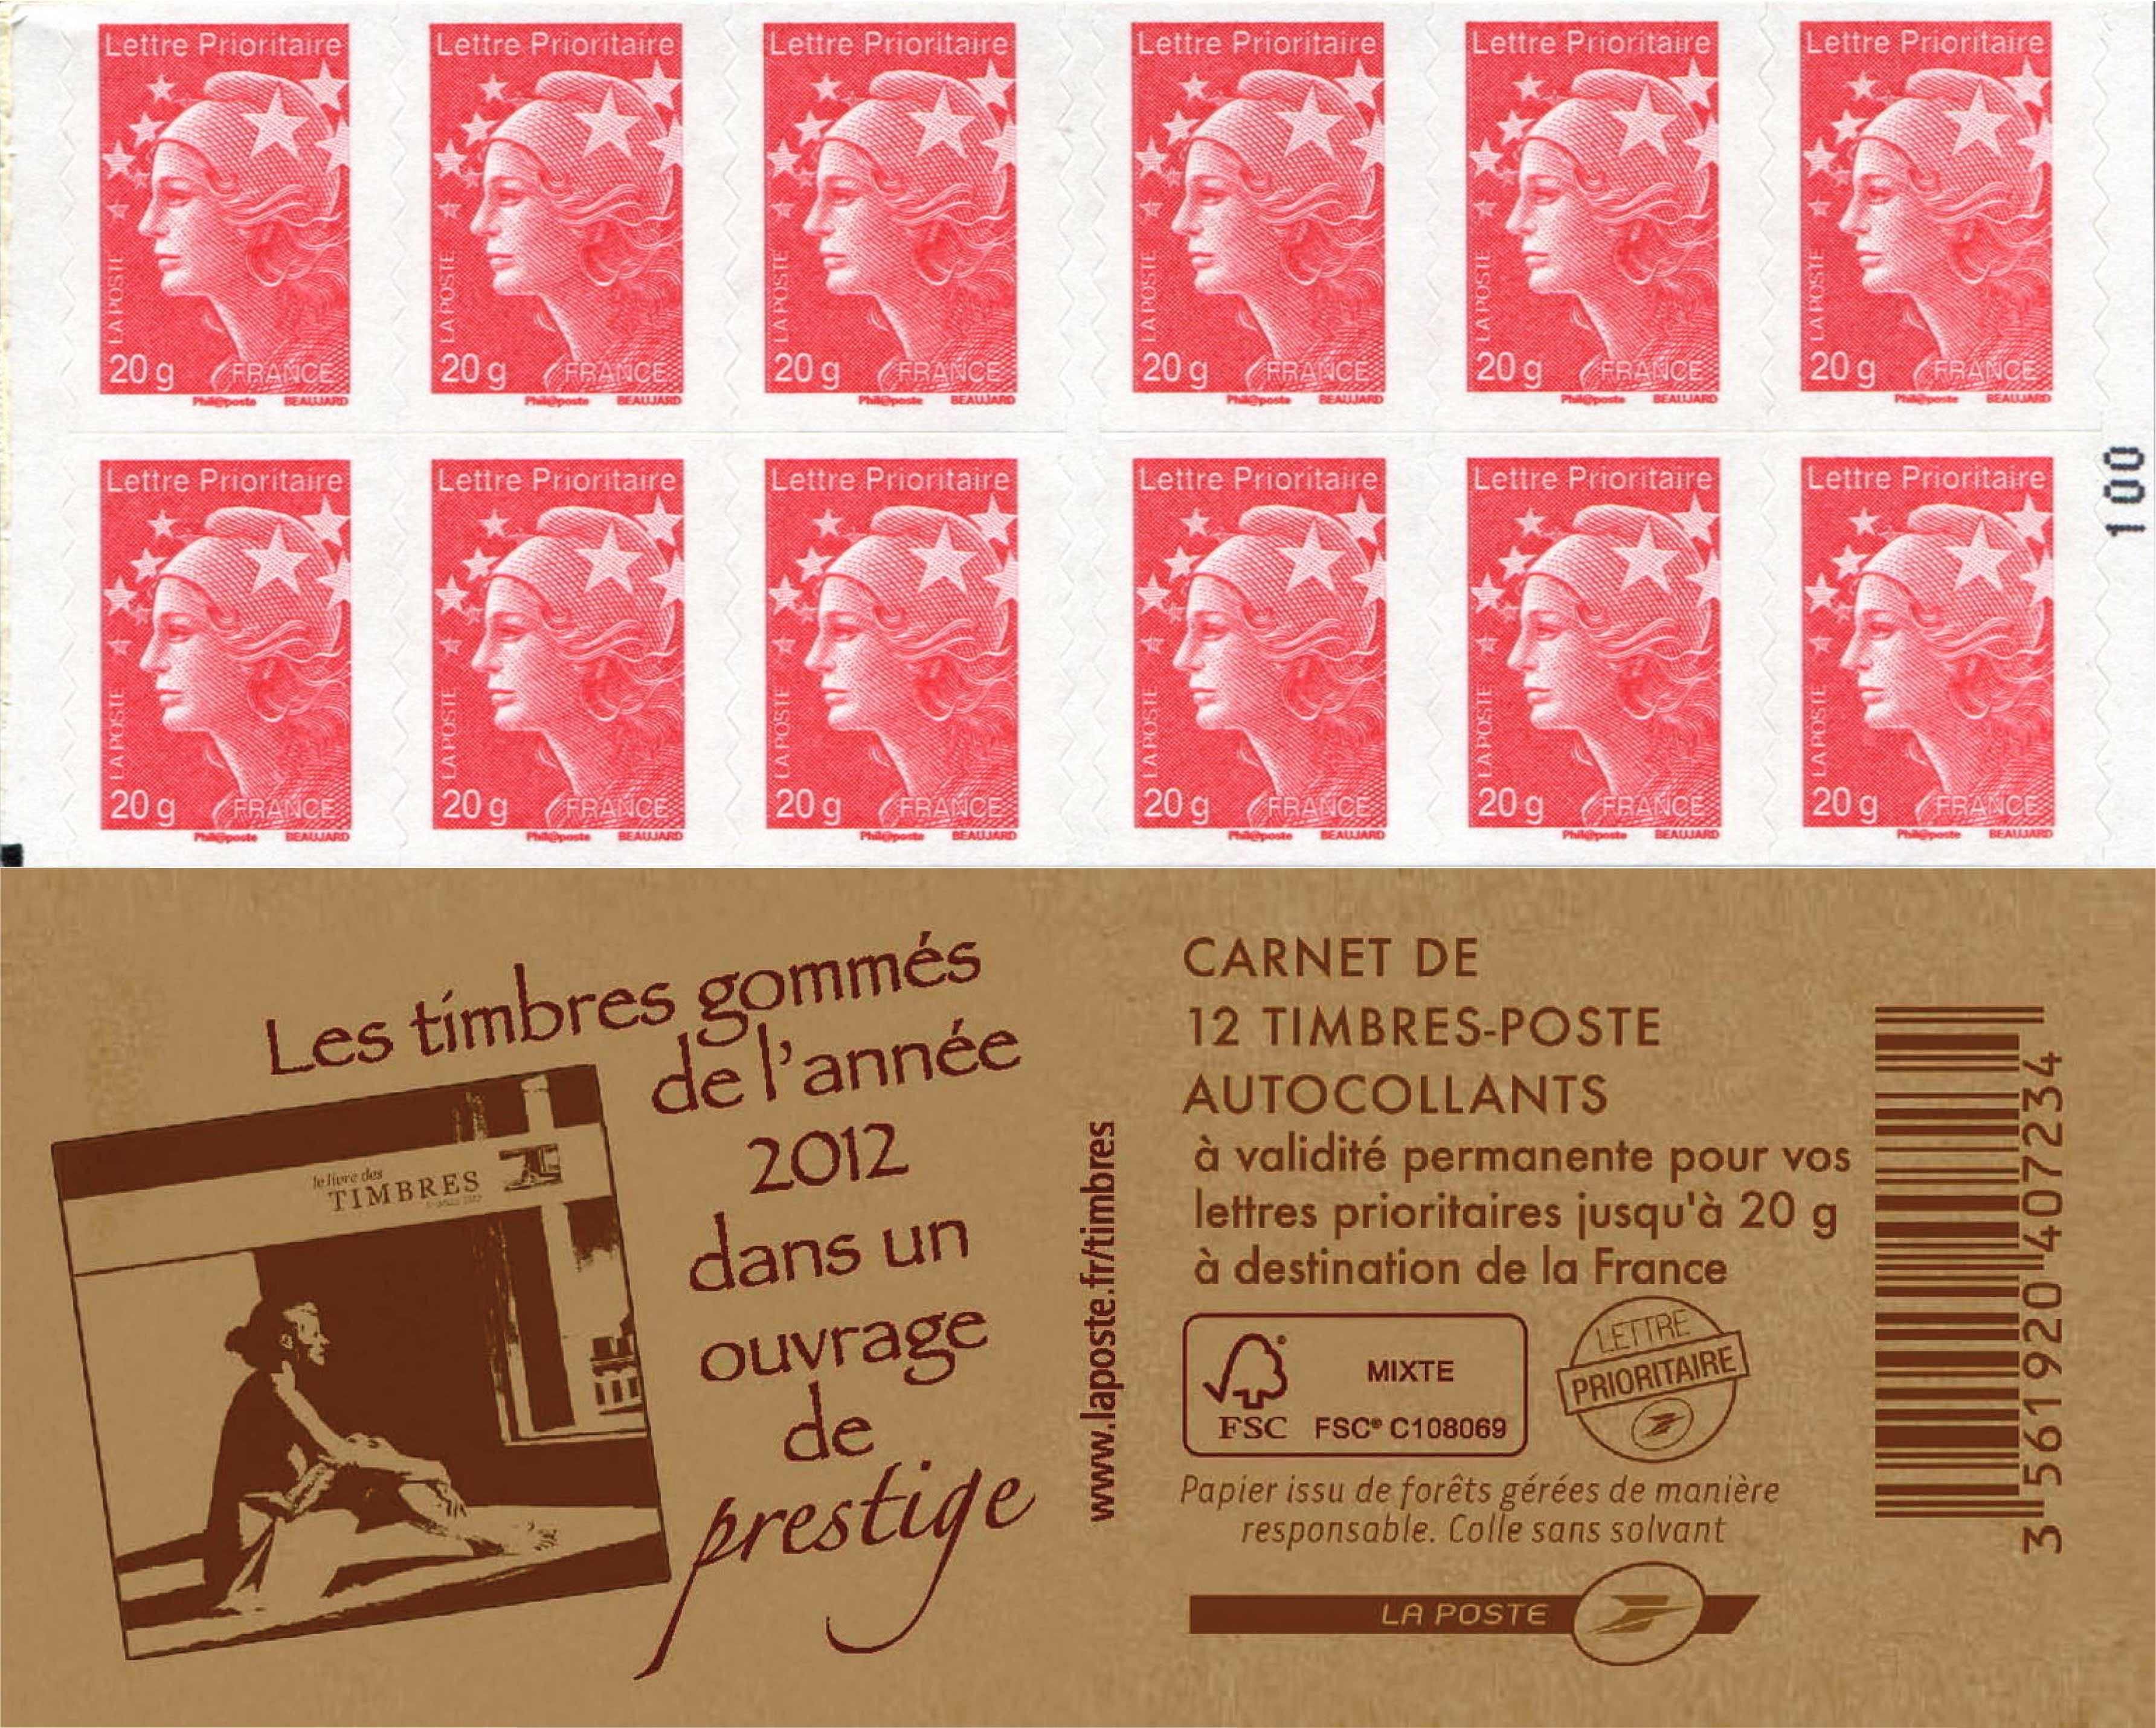 Les timbres gommés de l'année 2012 dans un ouvrage de prestige